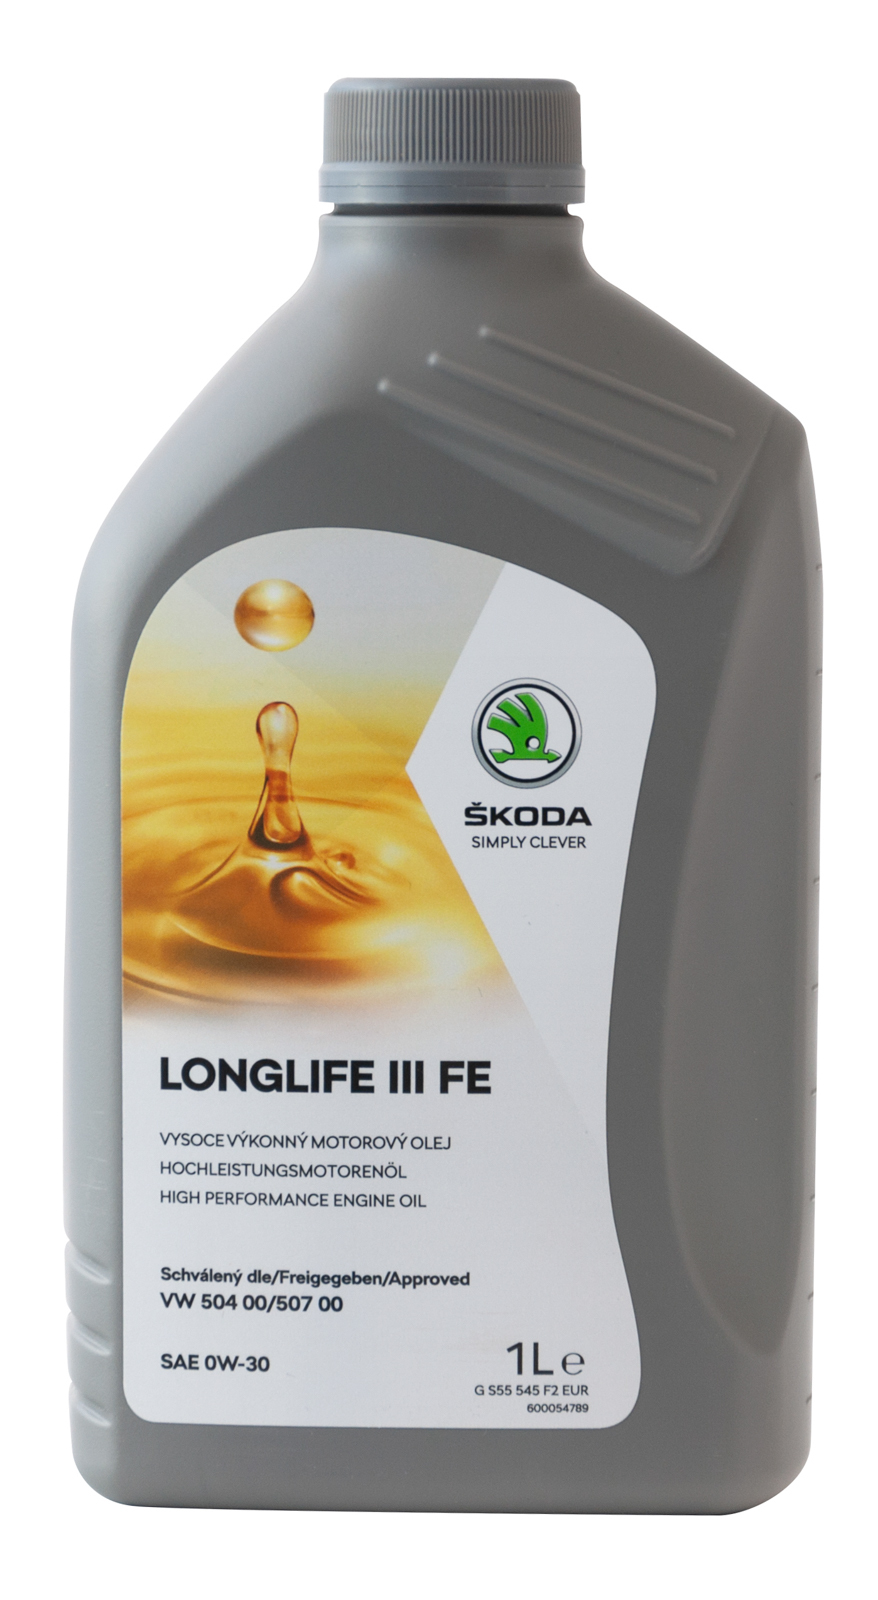 Синтетическое масло VW Group Skoda Longlife III FE 0W-30 1л